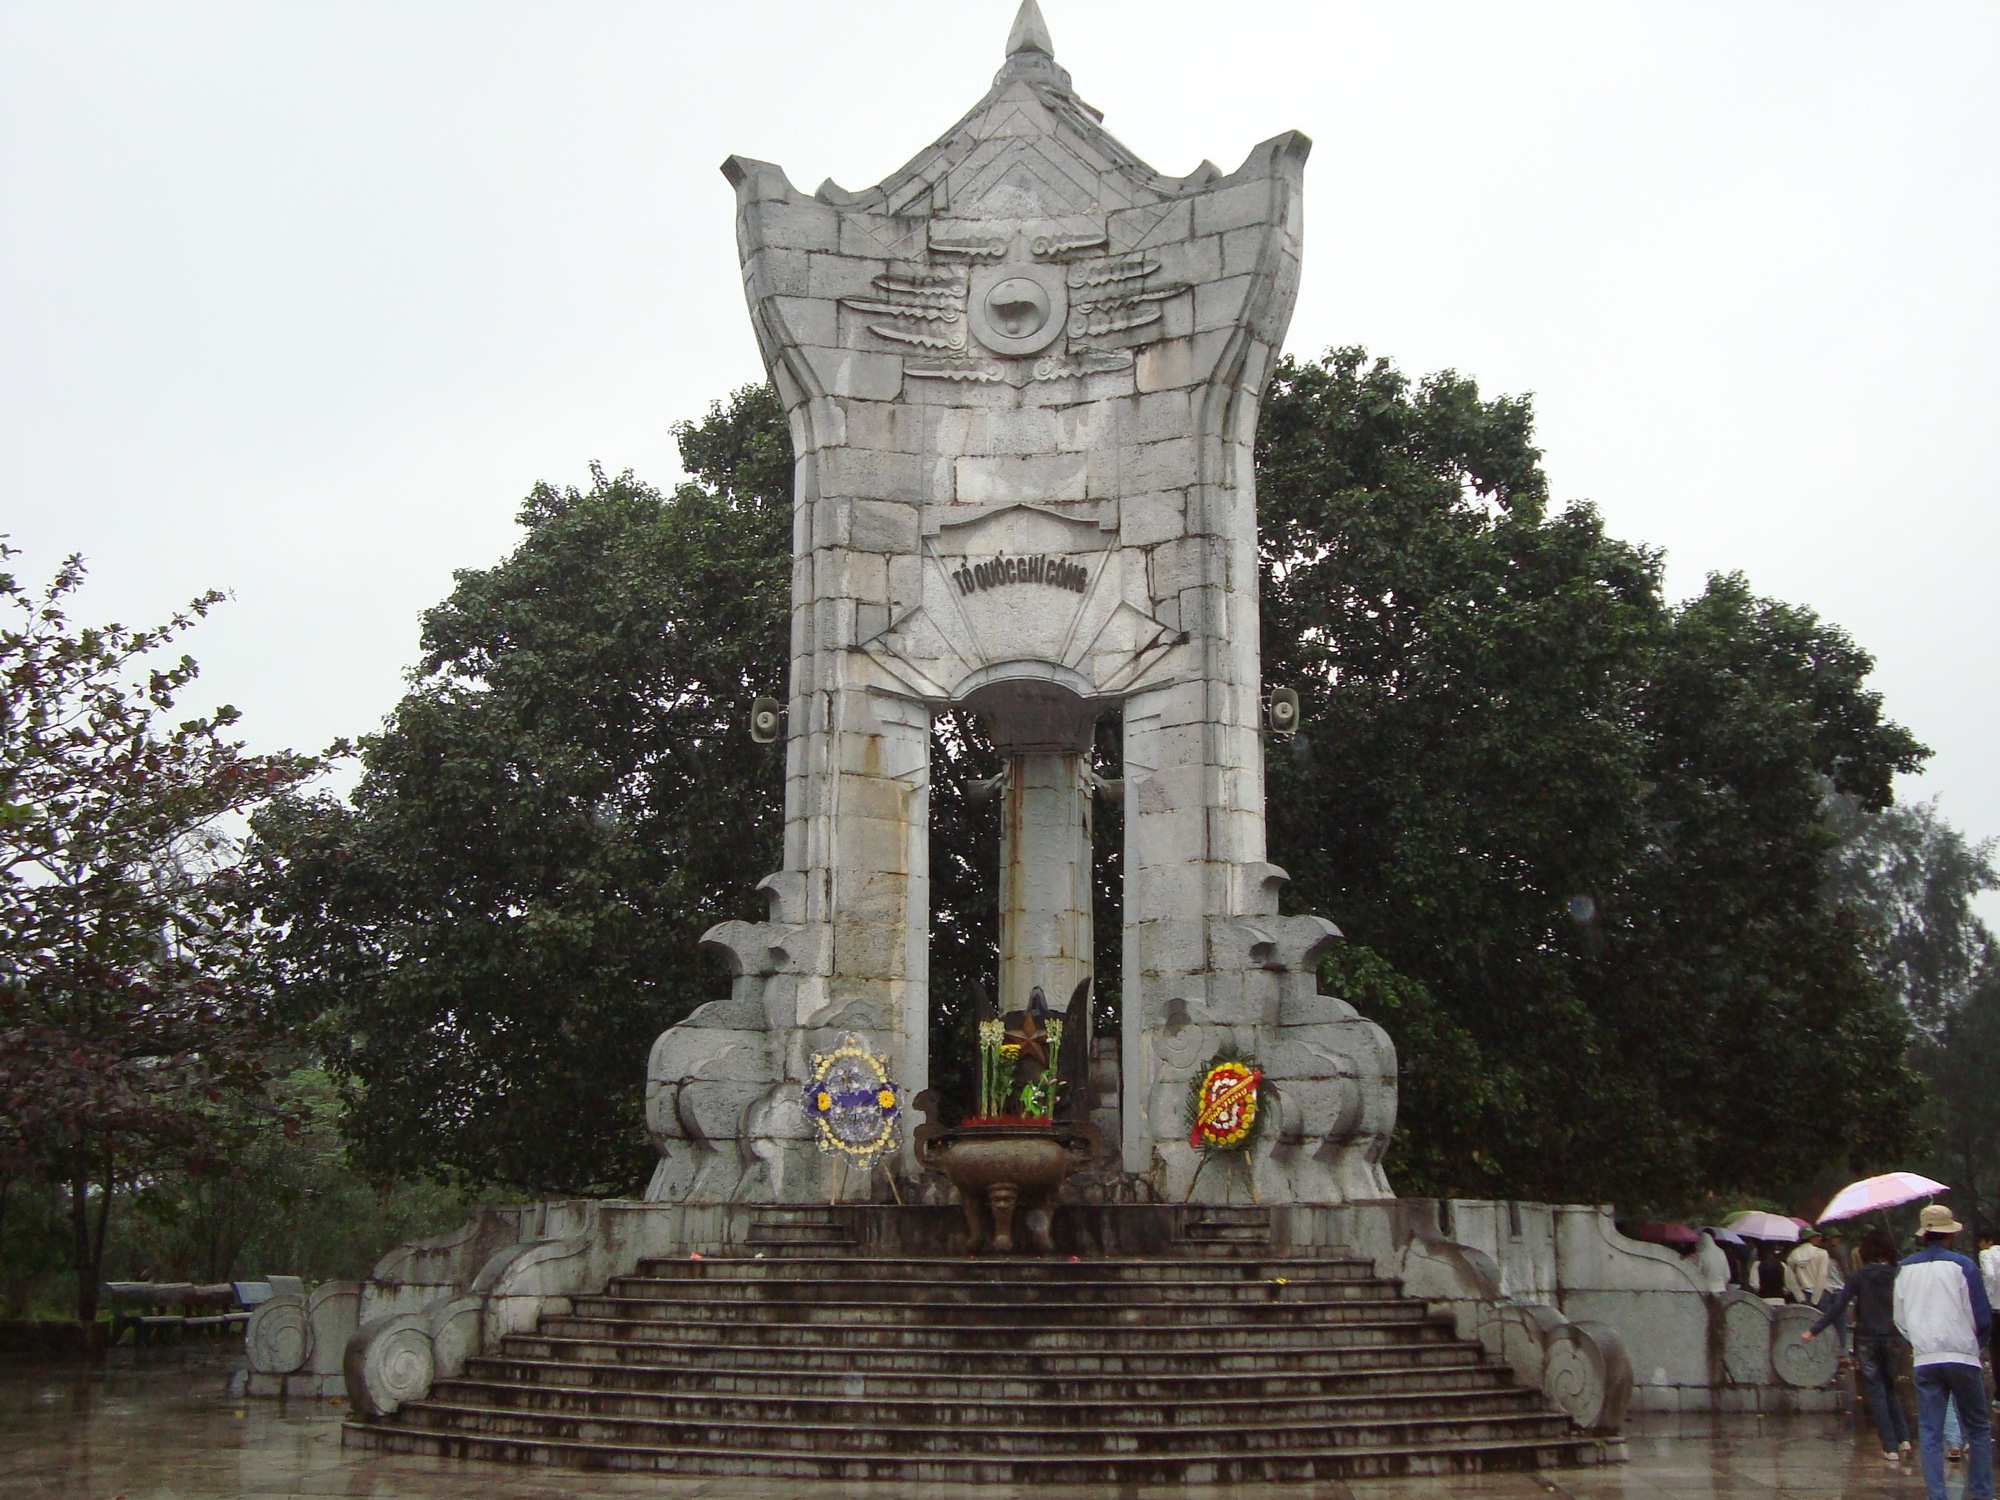 Nghĩa trang liệt sĩ quy mô lớn nhất Việt Nam đặt tại đâu? - Ảnh 2.